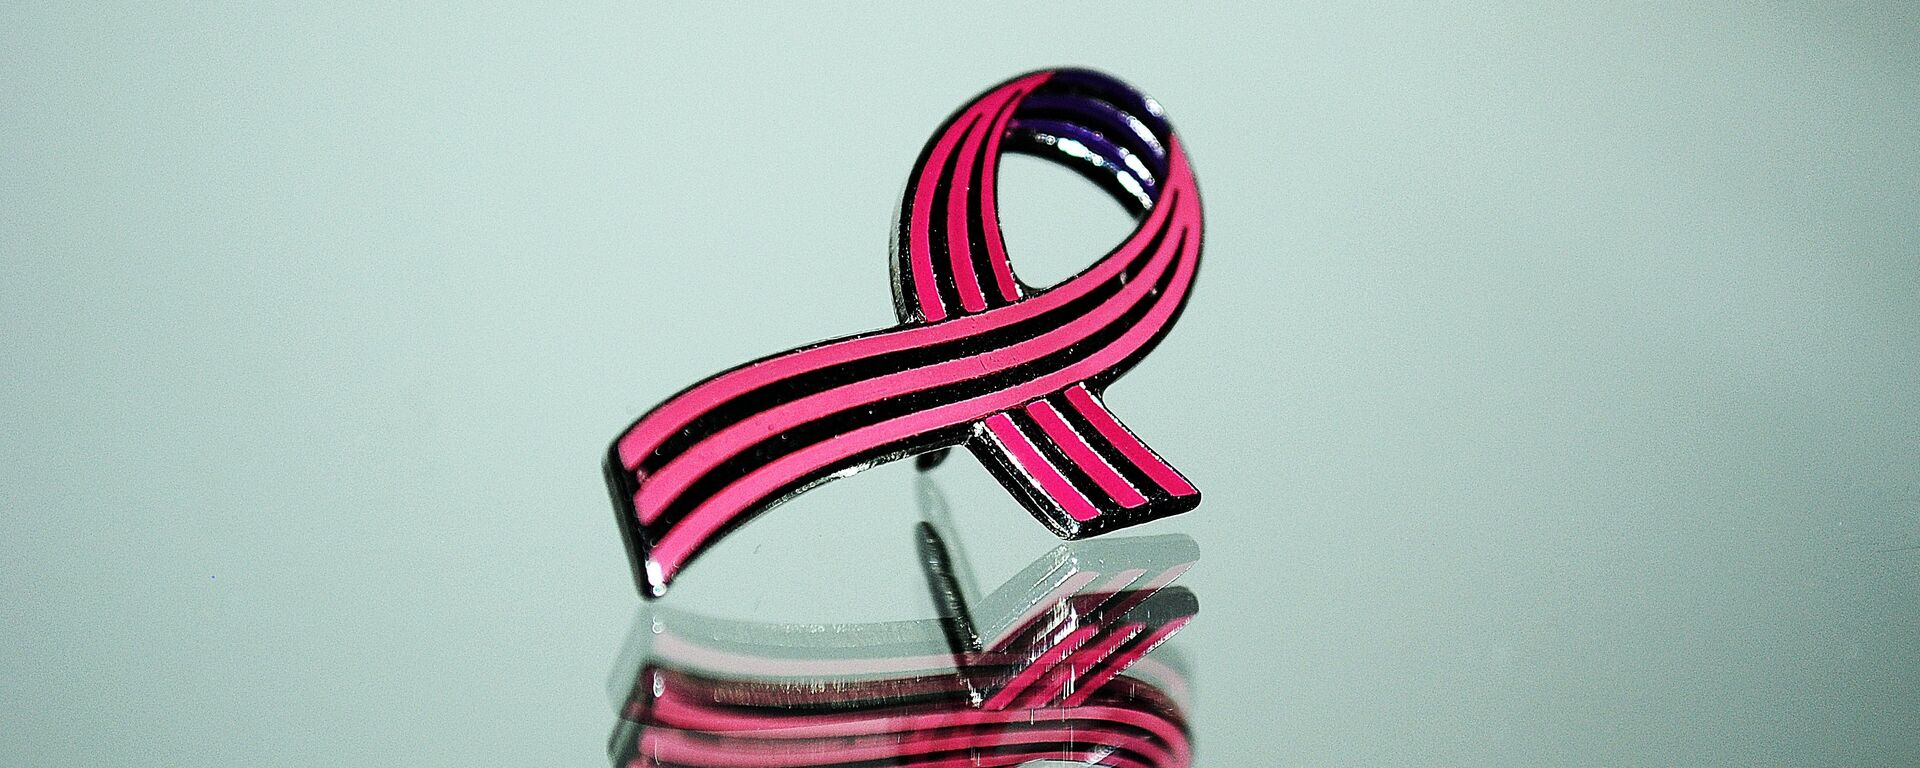 El lazo rosado, símbolo de la lucha contra el cáncer de mama  - Sputnik Mundo, 1920, 19.10.2021